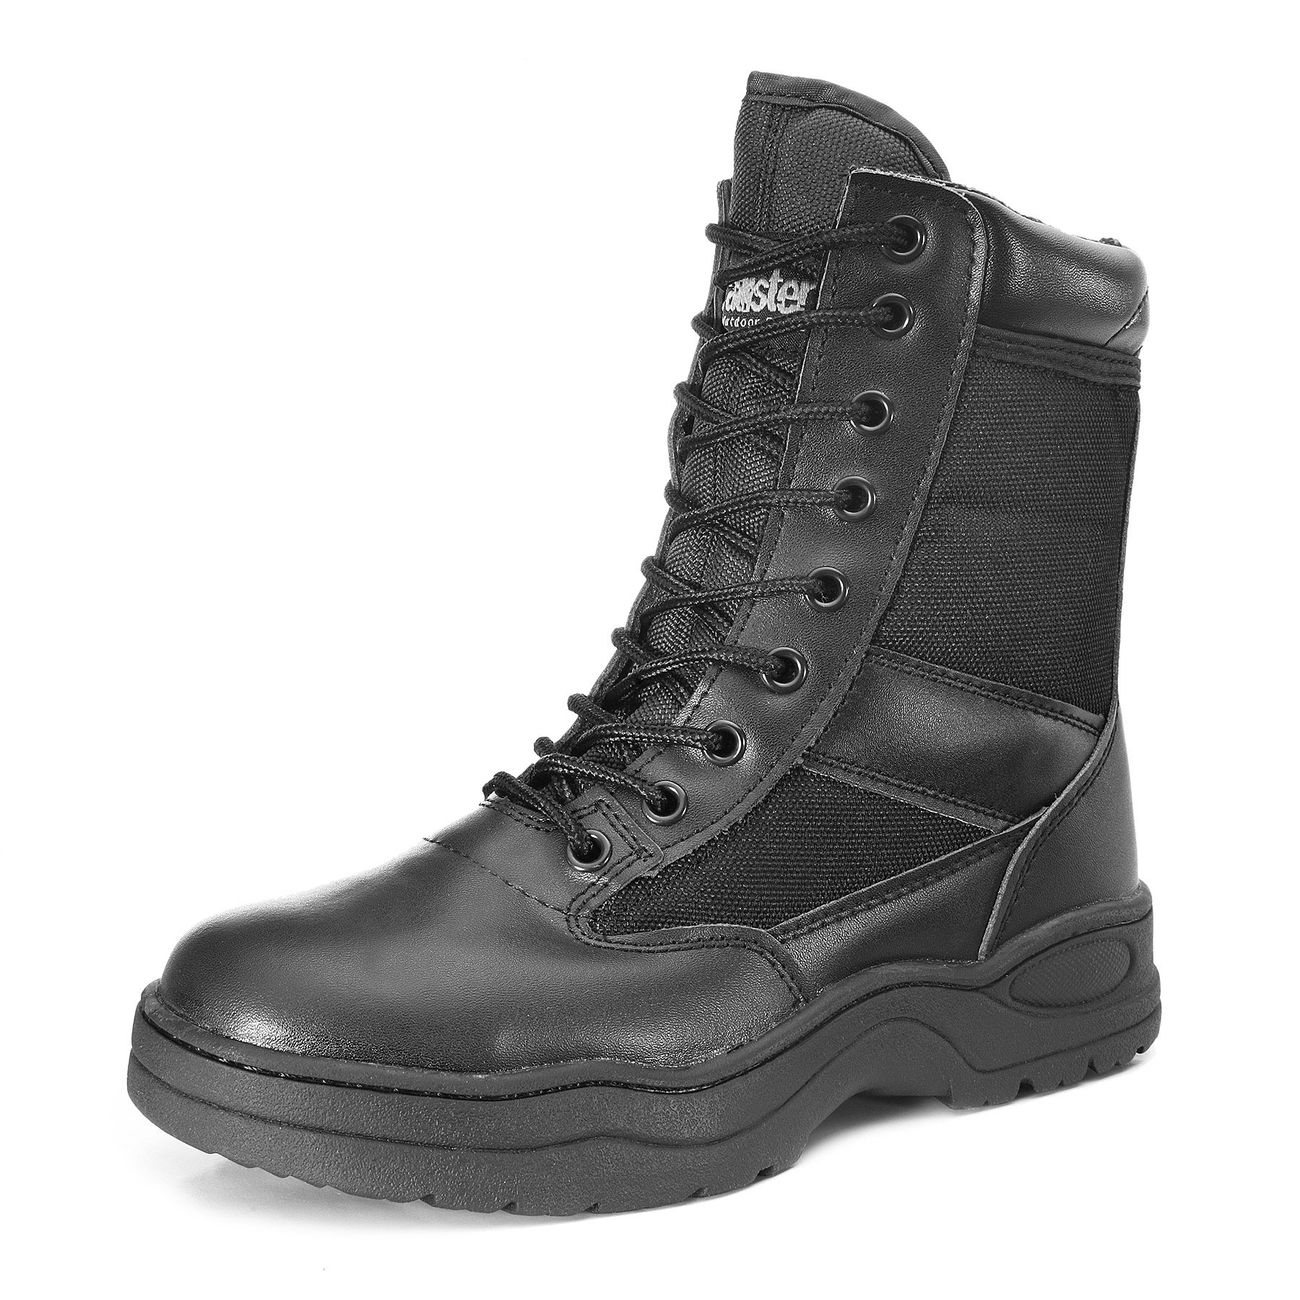 McAllister Outdoor Boots Stiefel schwarz Bild 1